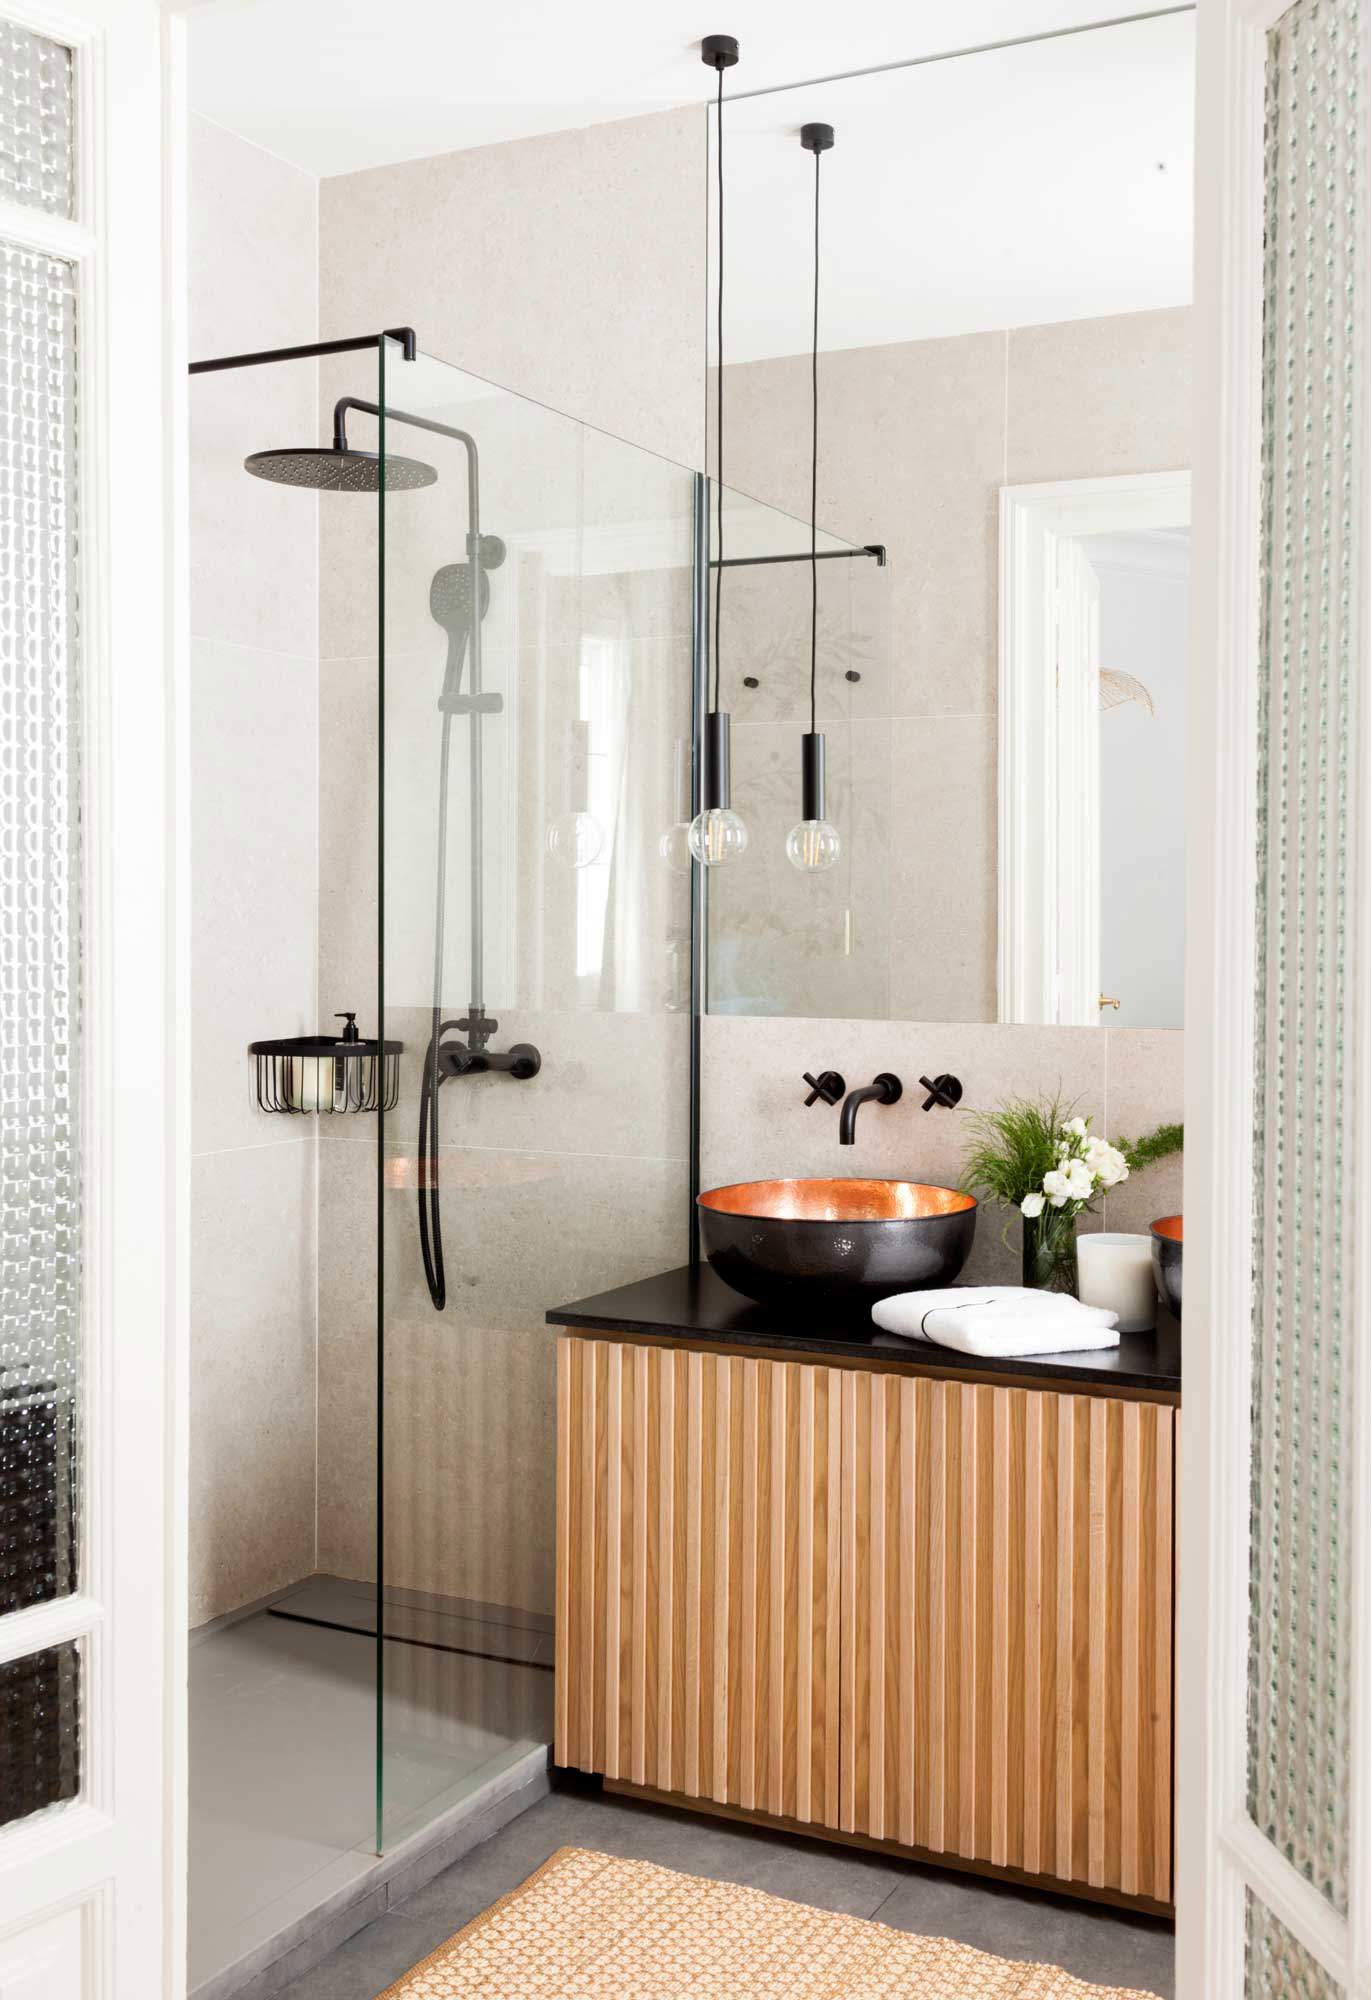 Baño pequeño moderno con mueble de palillería, ducha con mampara sin perfiles y lámparas suspendidas